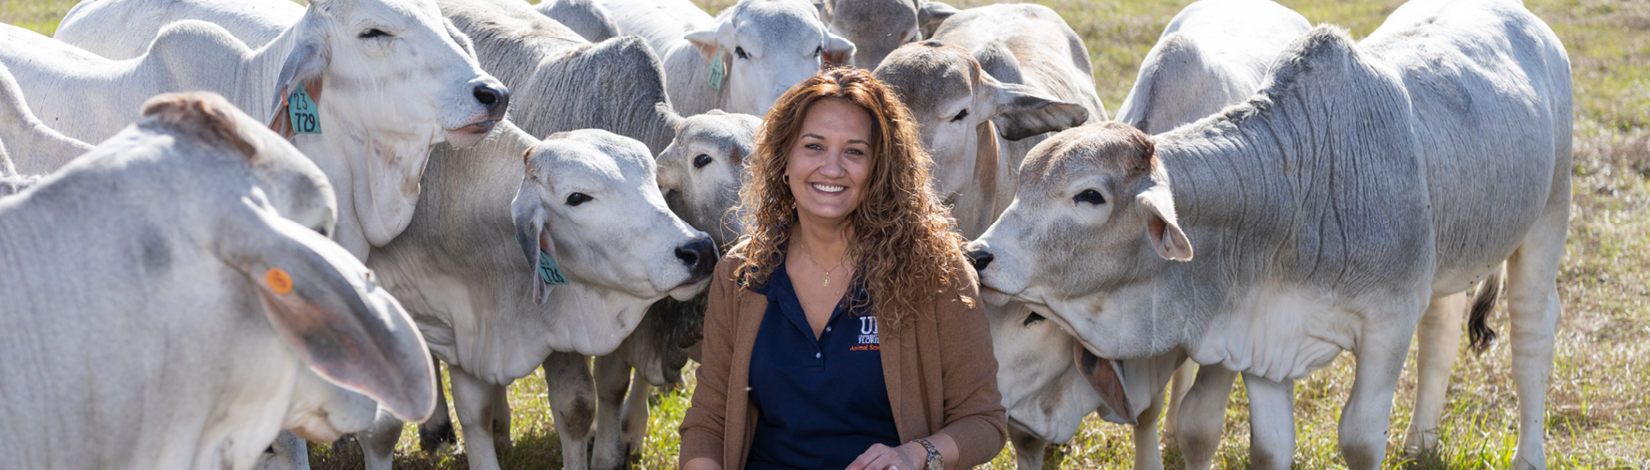 Fernanda Rezende posing with brahman cattle behind her